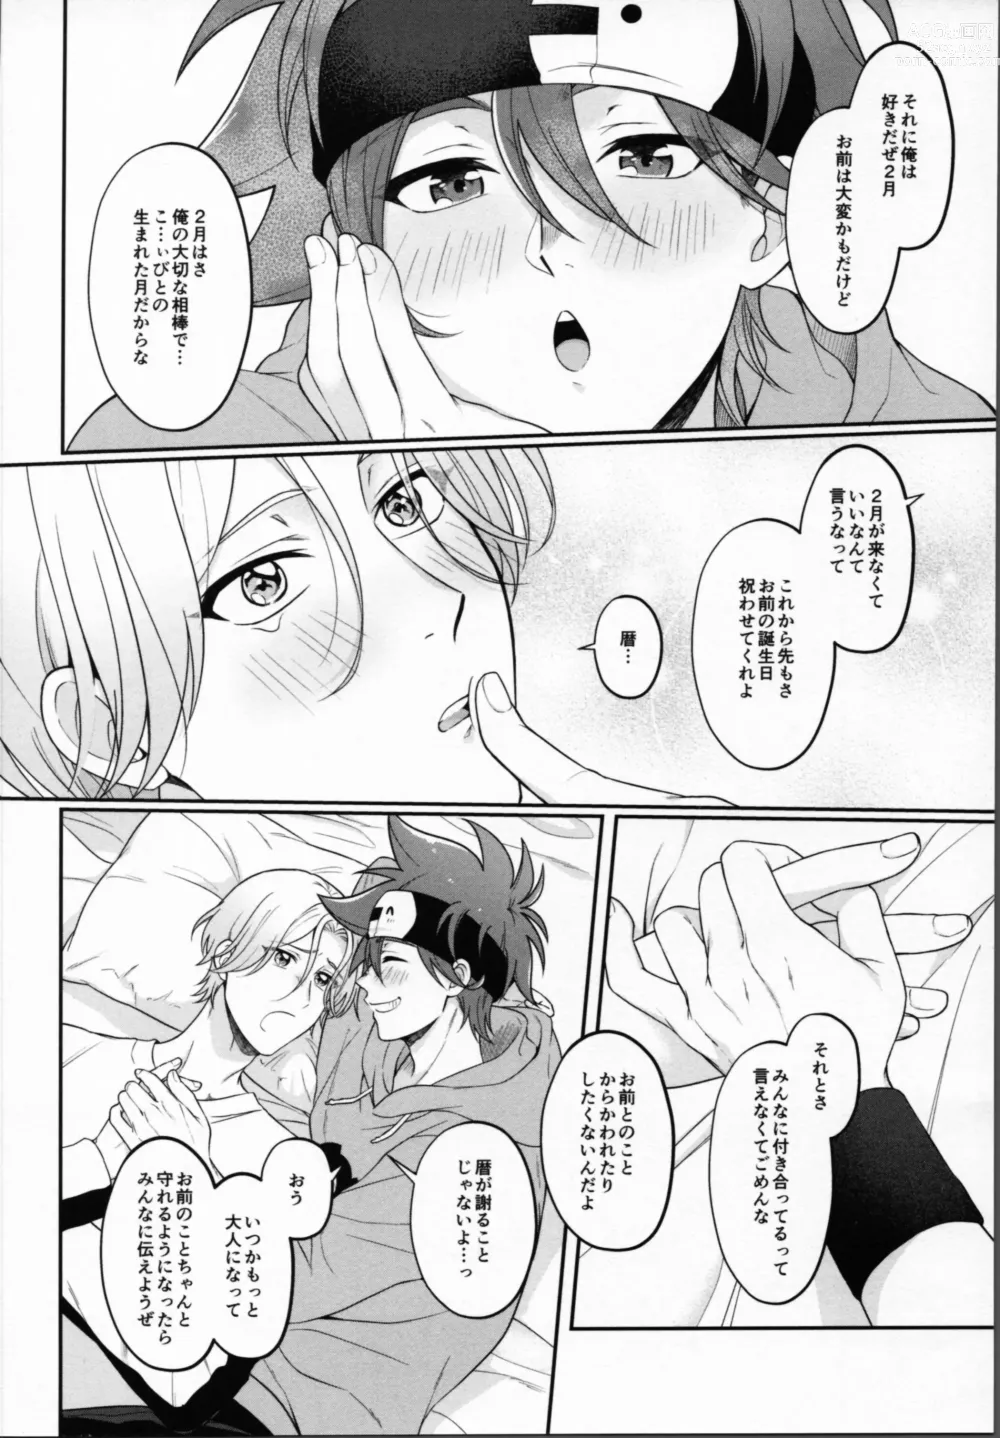 Page 11 of doujinshi 2 Tsuki ga kirai to iukeredo